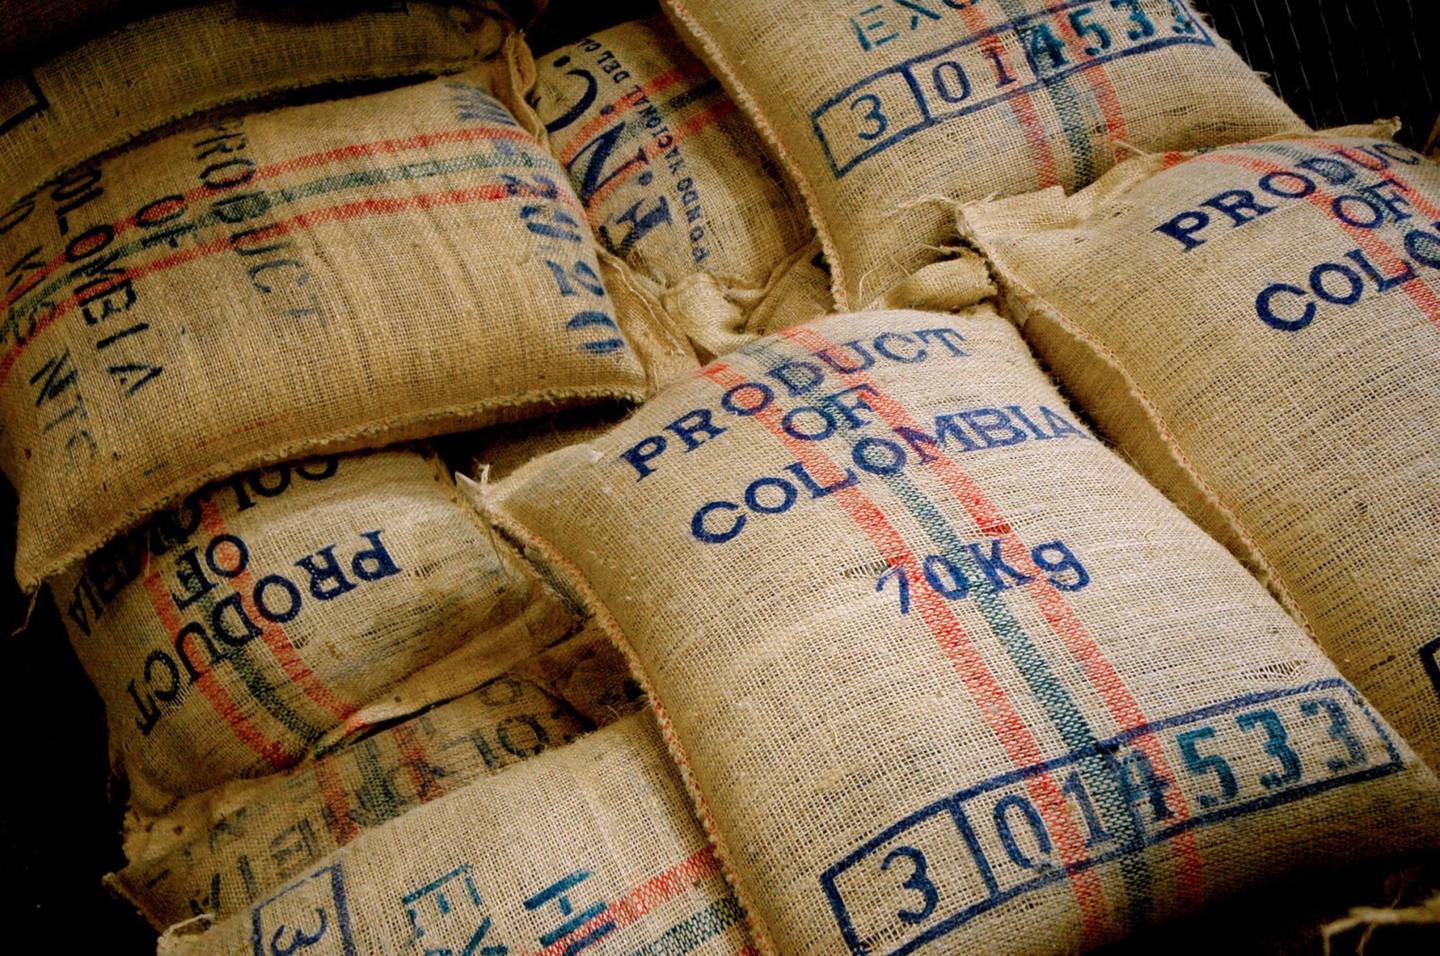 Sacos de granos de café de plantaciones de todo el país se sientan en una tostadora en Bogotá, Colombia, el 11 de junio de 2008.dfd